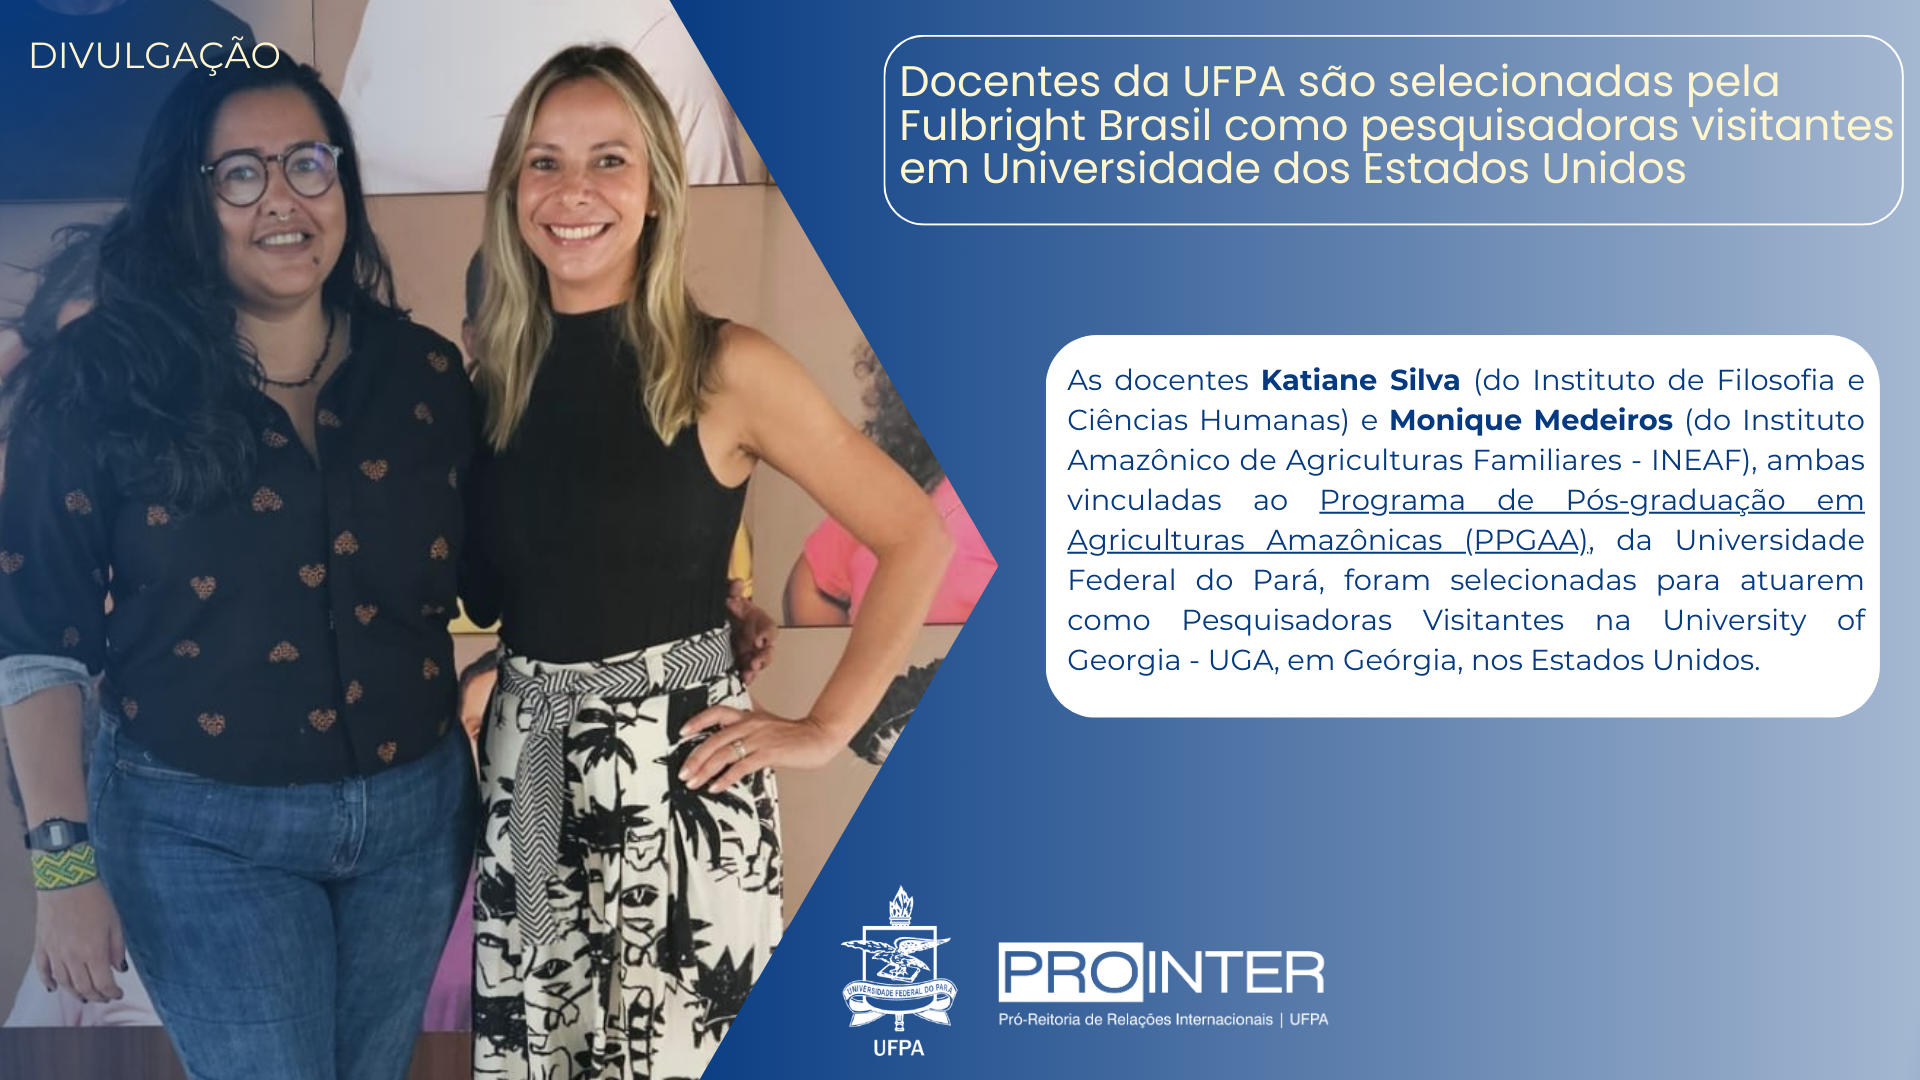 Docentes da UFPA são selecionadas pela Fulbright Brasil como pesquisadoras visitantes em Universidade dos Estados Unidos